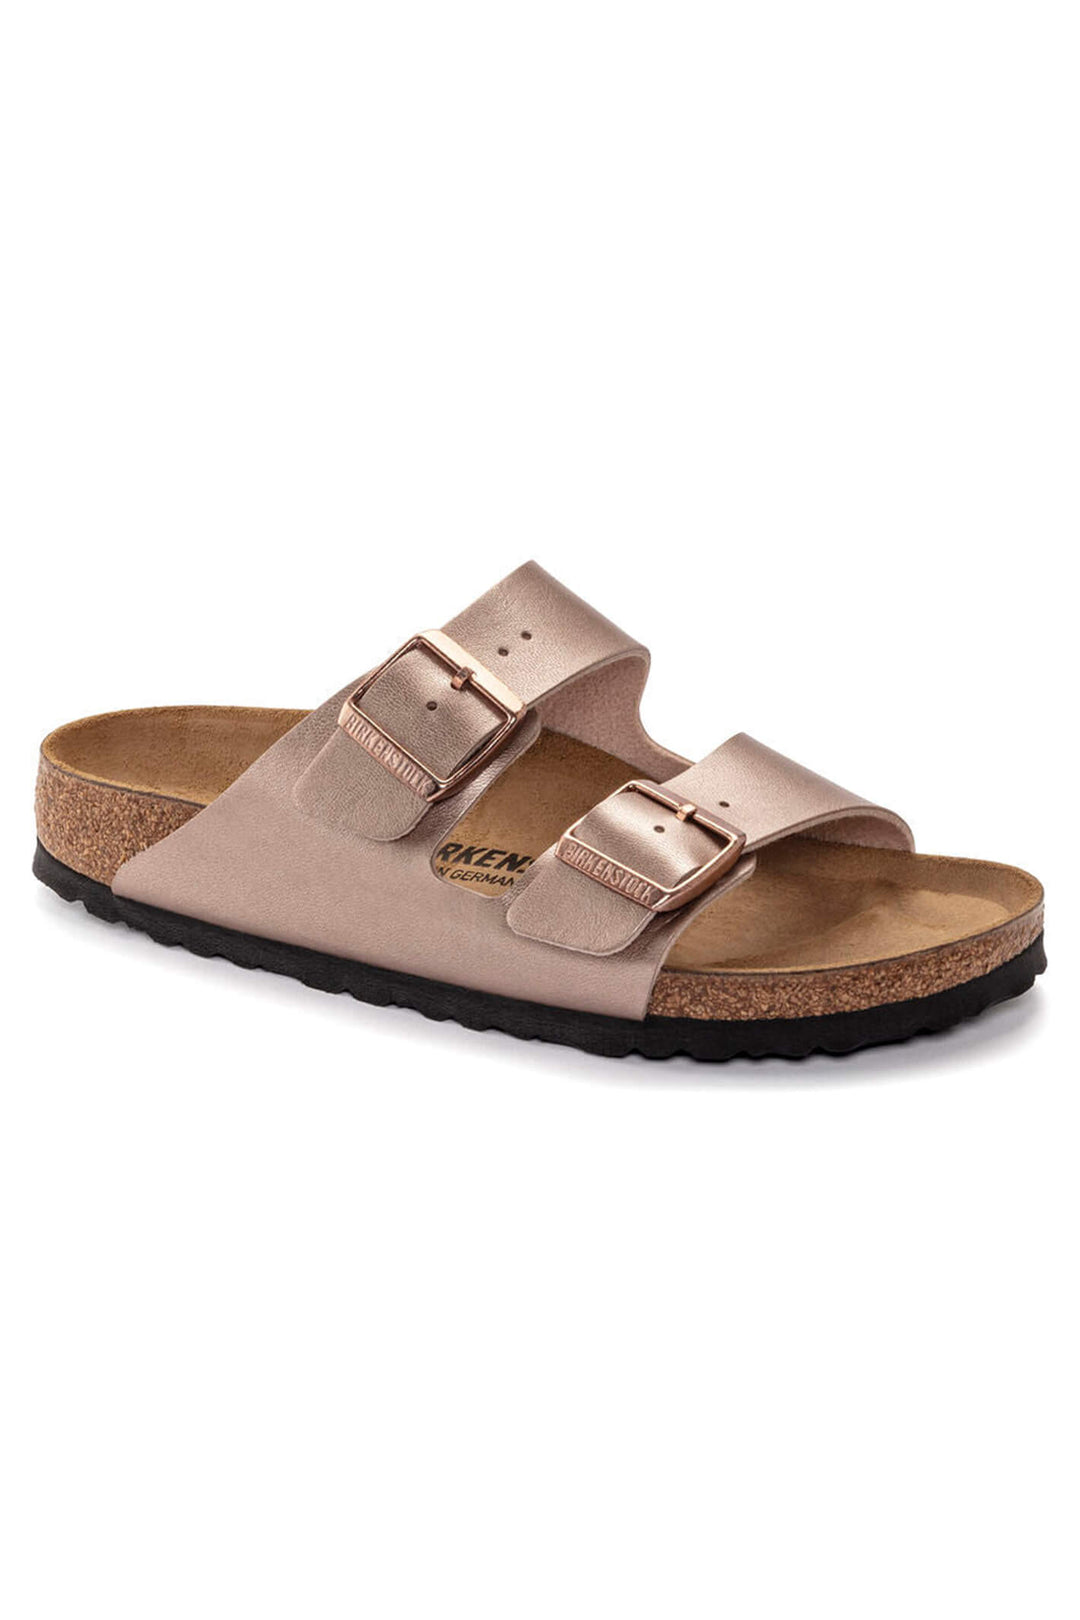 Birkenstock Arizona 1023960 Copper Narrow Fit Sandal - Shirley Allum Boutique